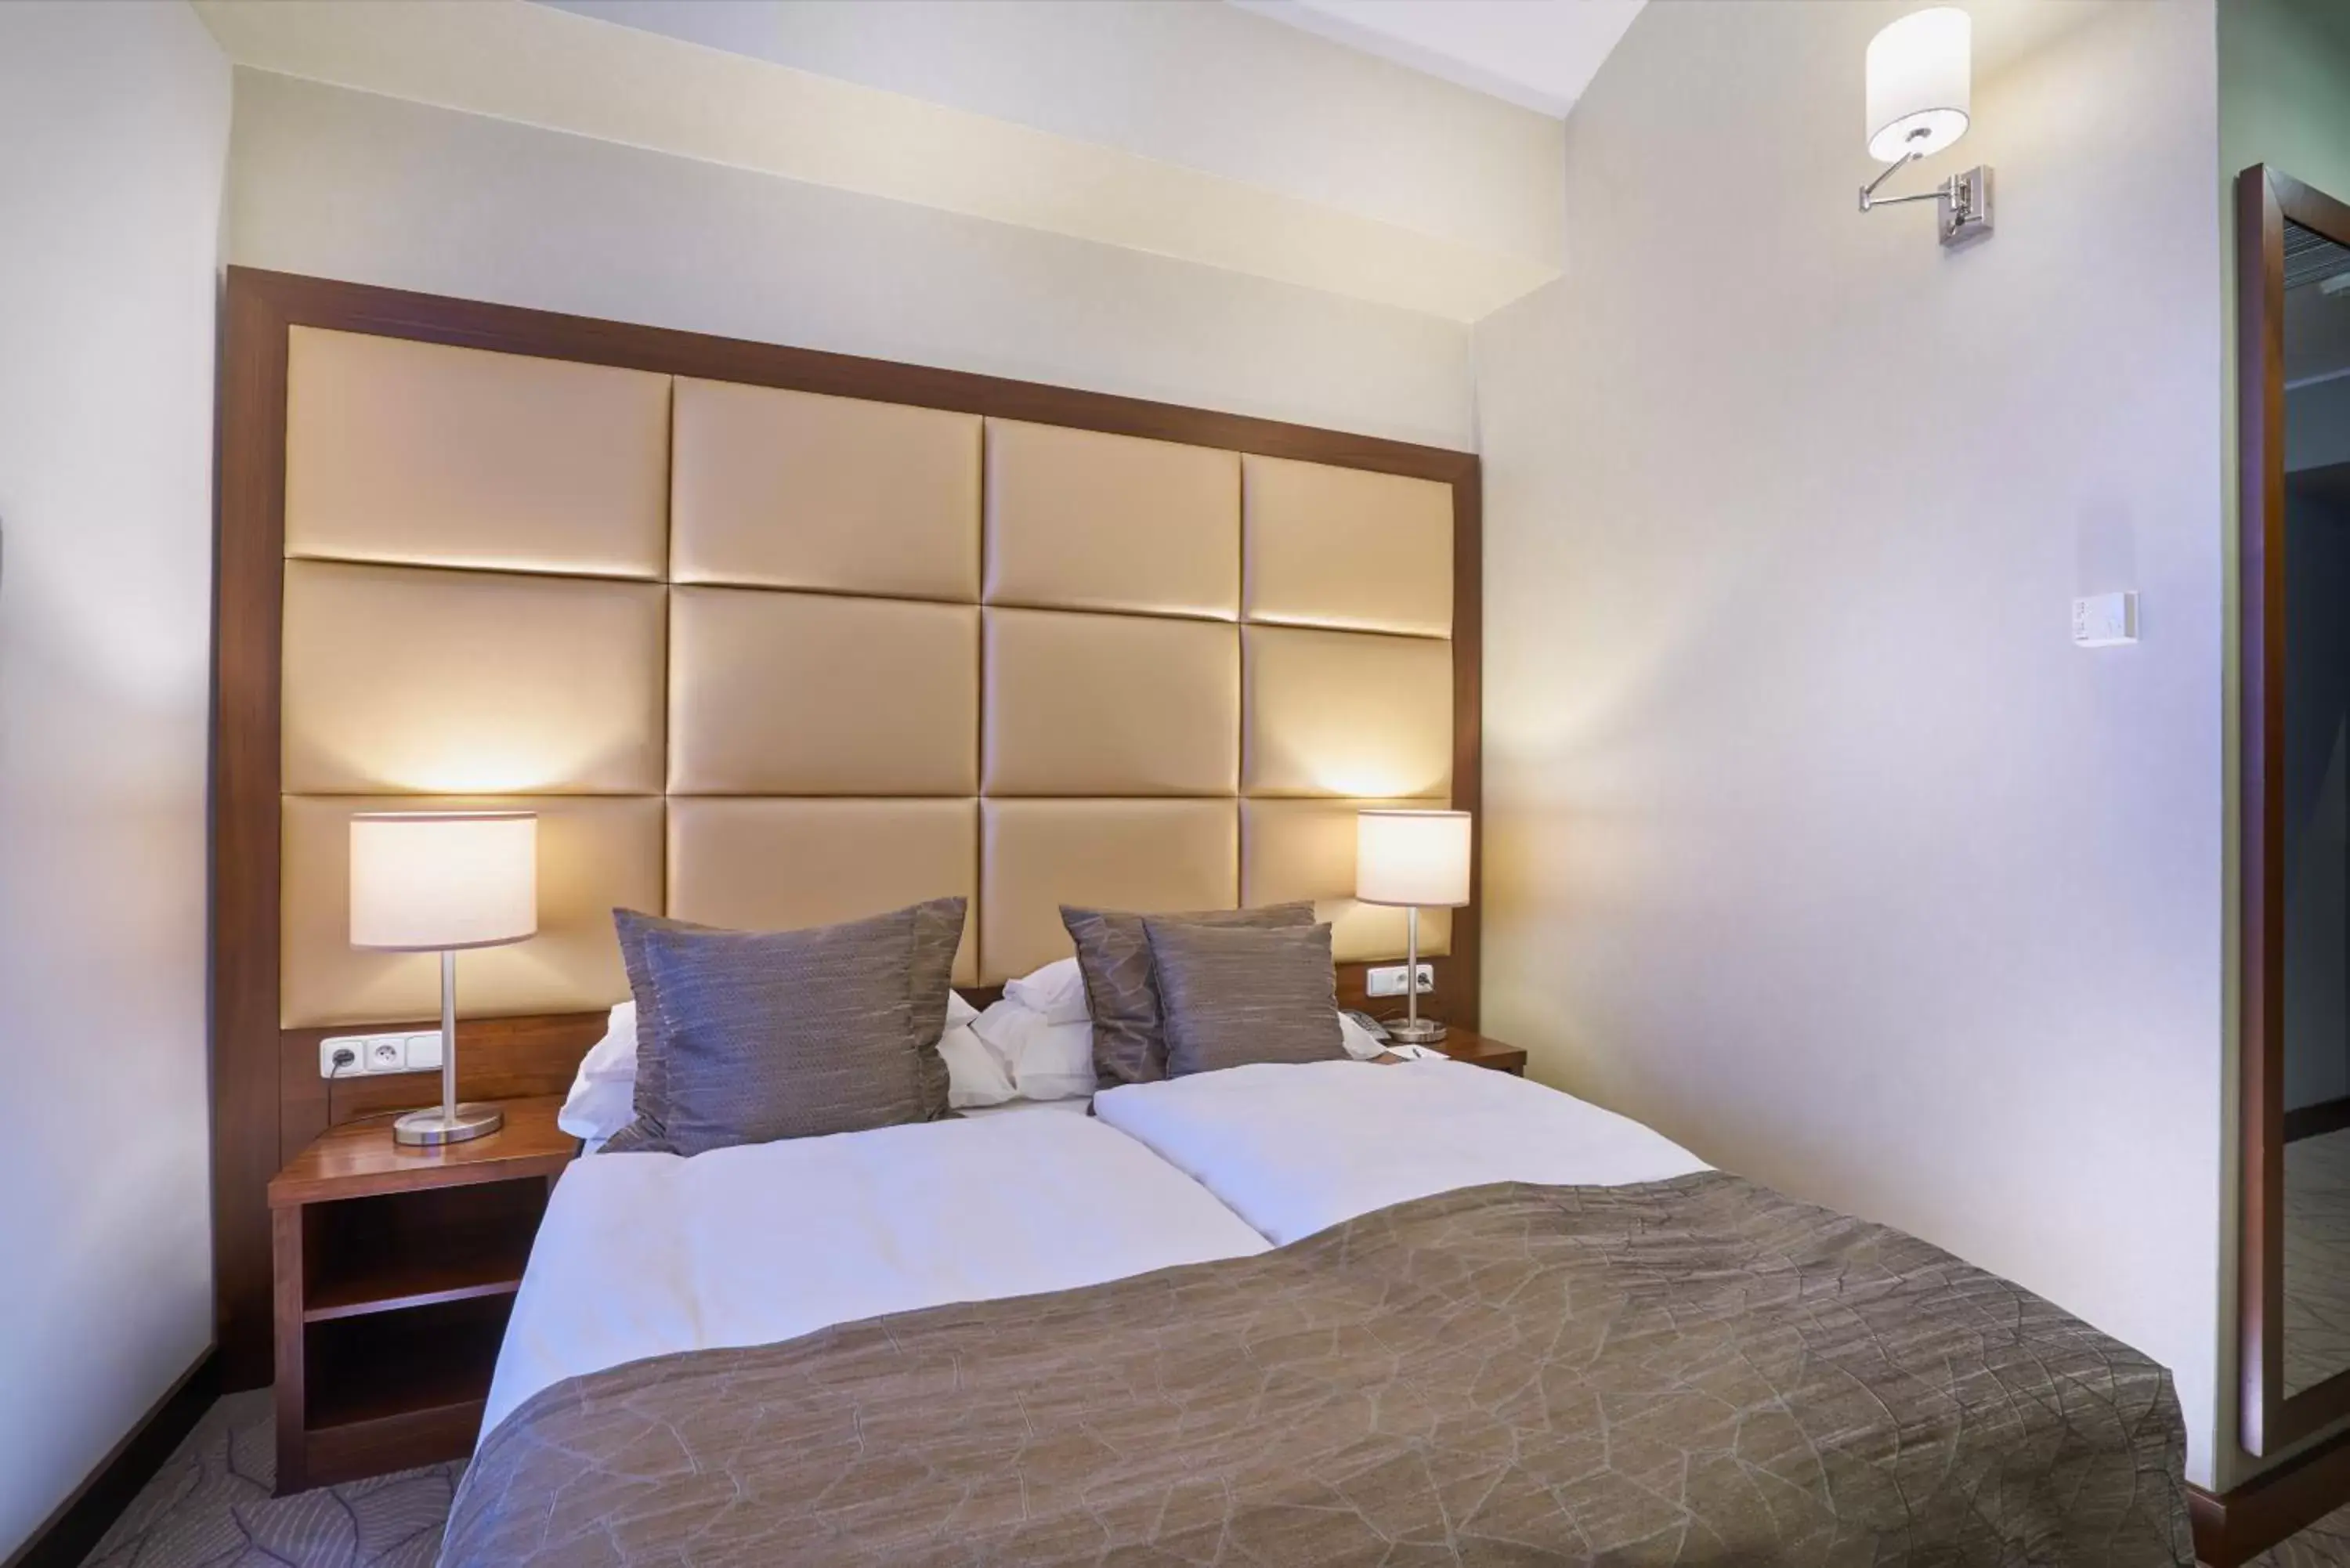 Bed, Room Photo in Kosher Hotel King David Prague